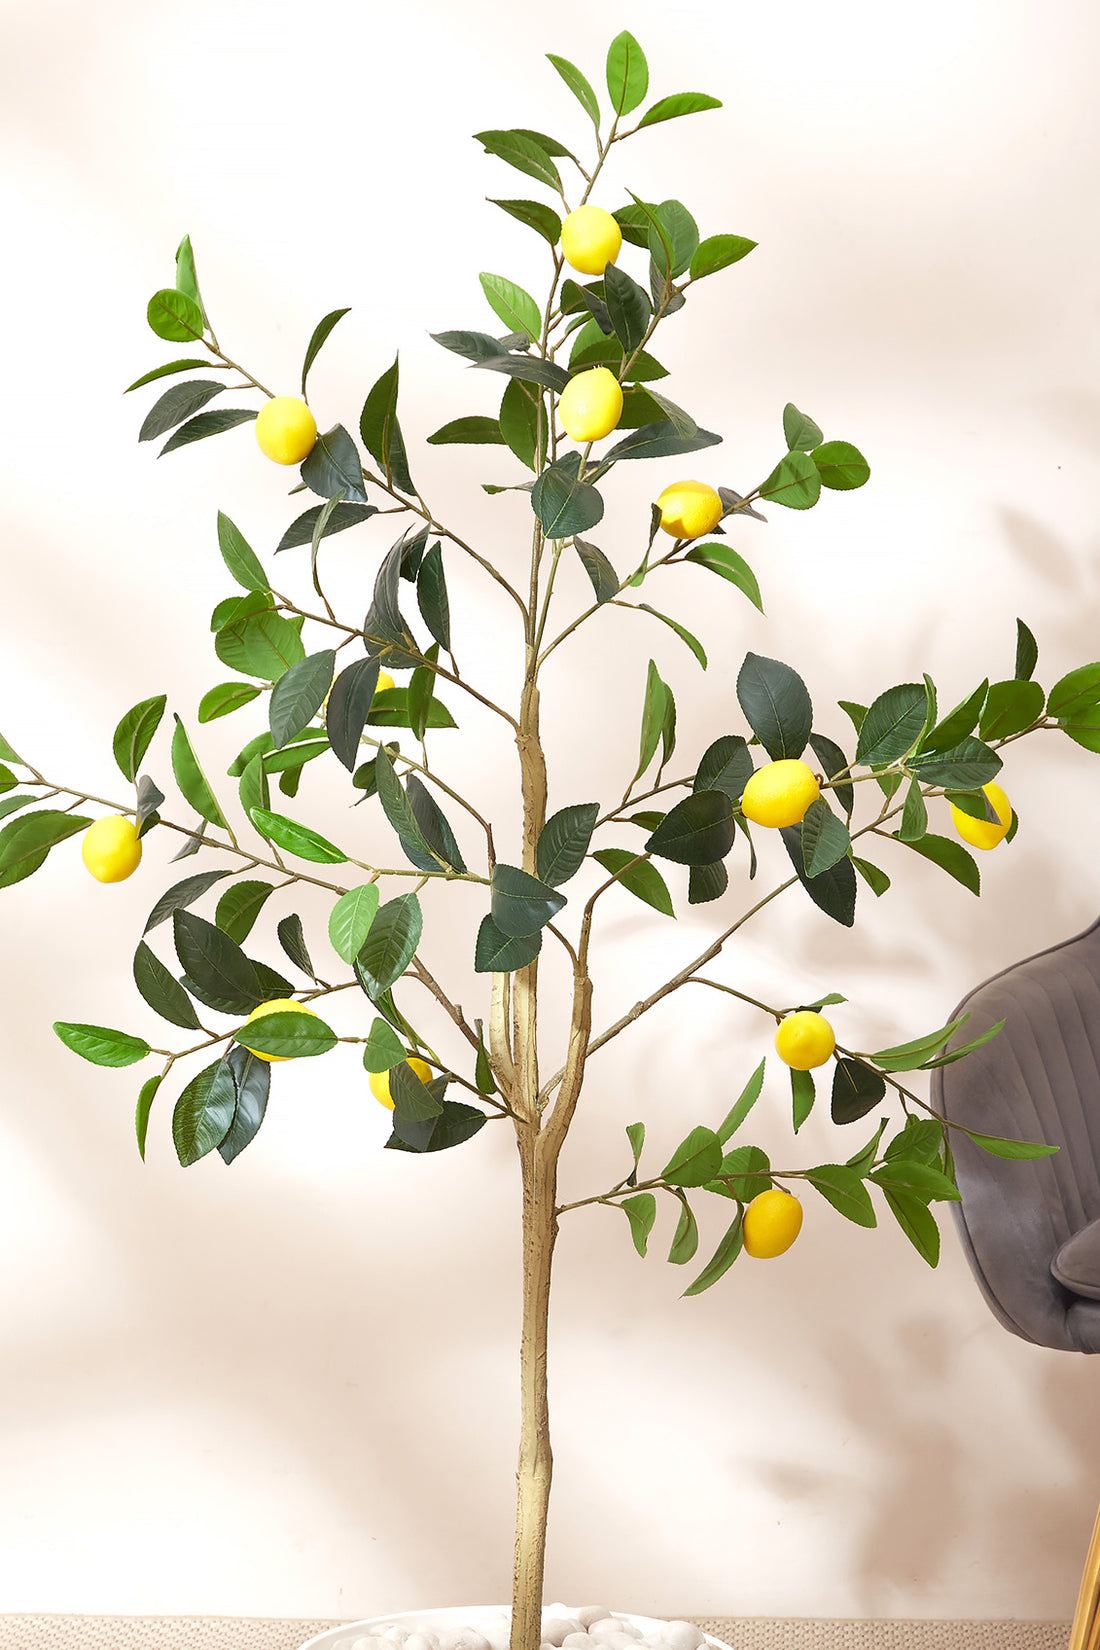 Artificial Lush Lemon Plant - 4 Feet (With Black Base Pot)